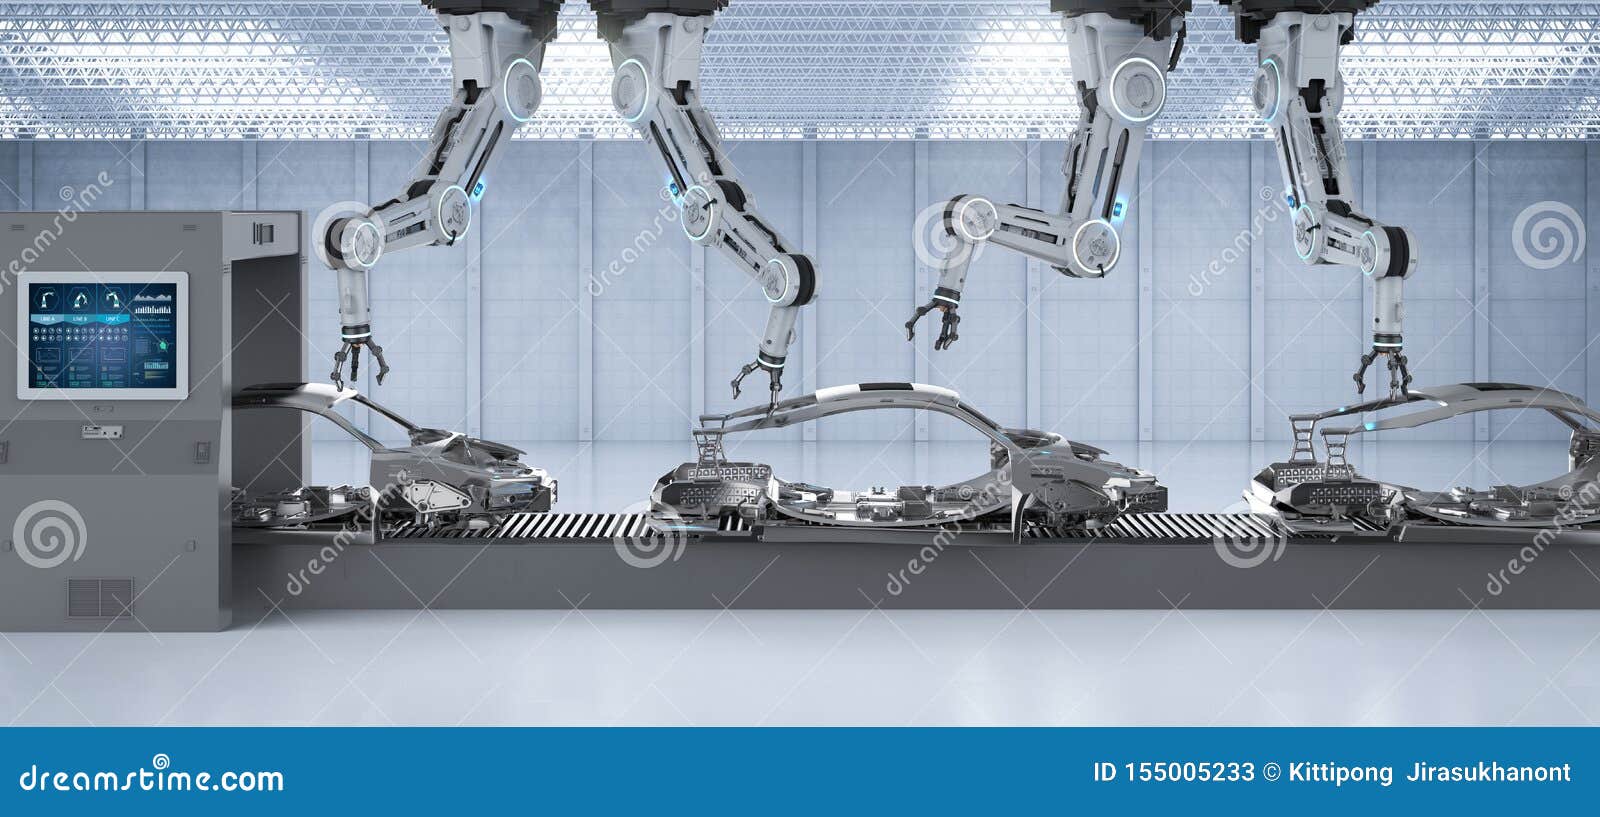 automation aumobile factory concept